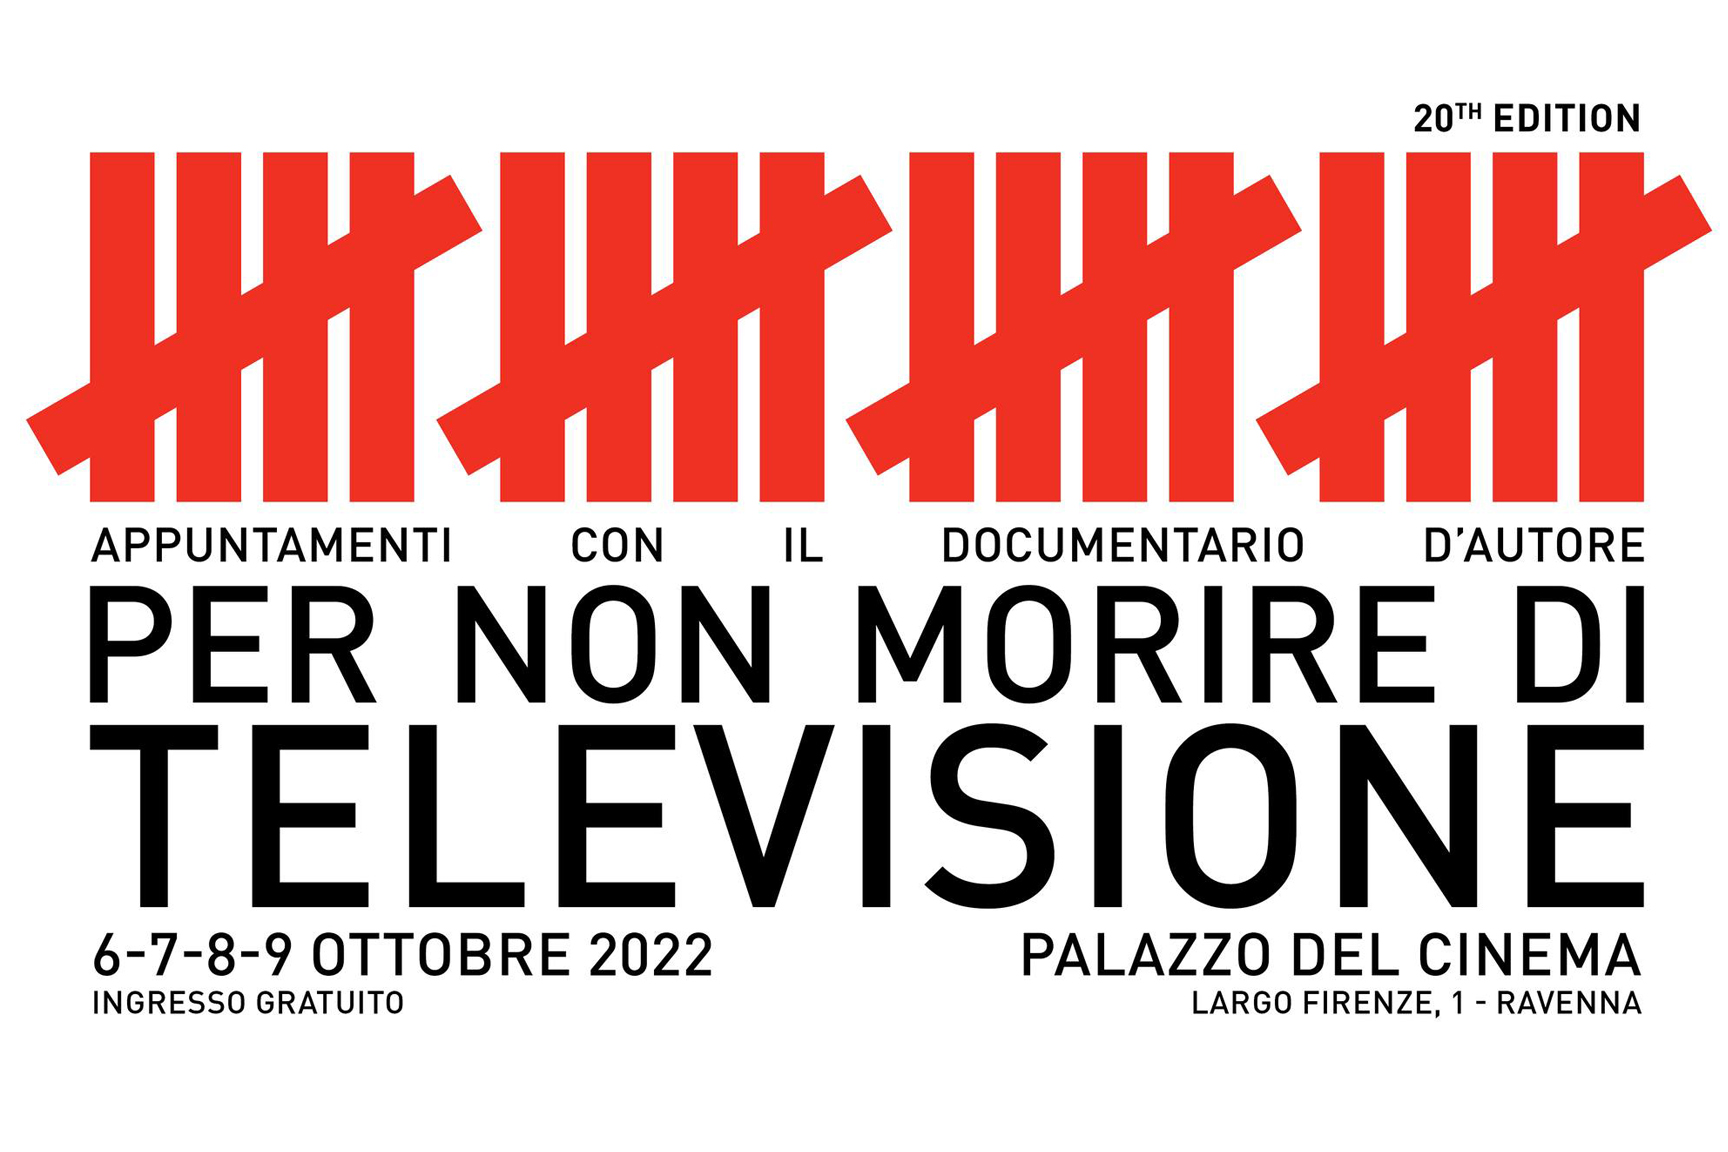 Per non morire di televisione - Ravenna Turismo